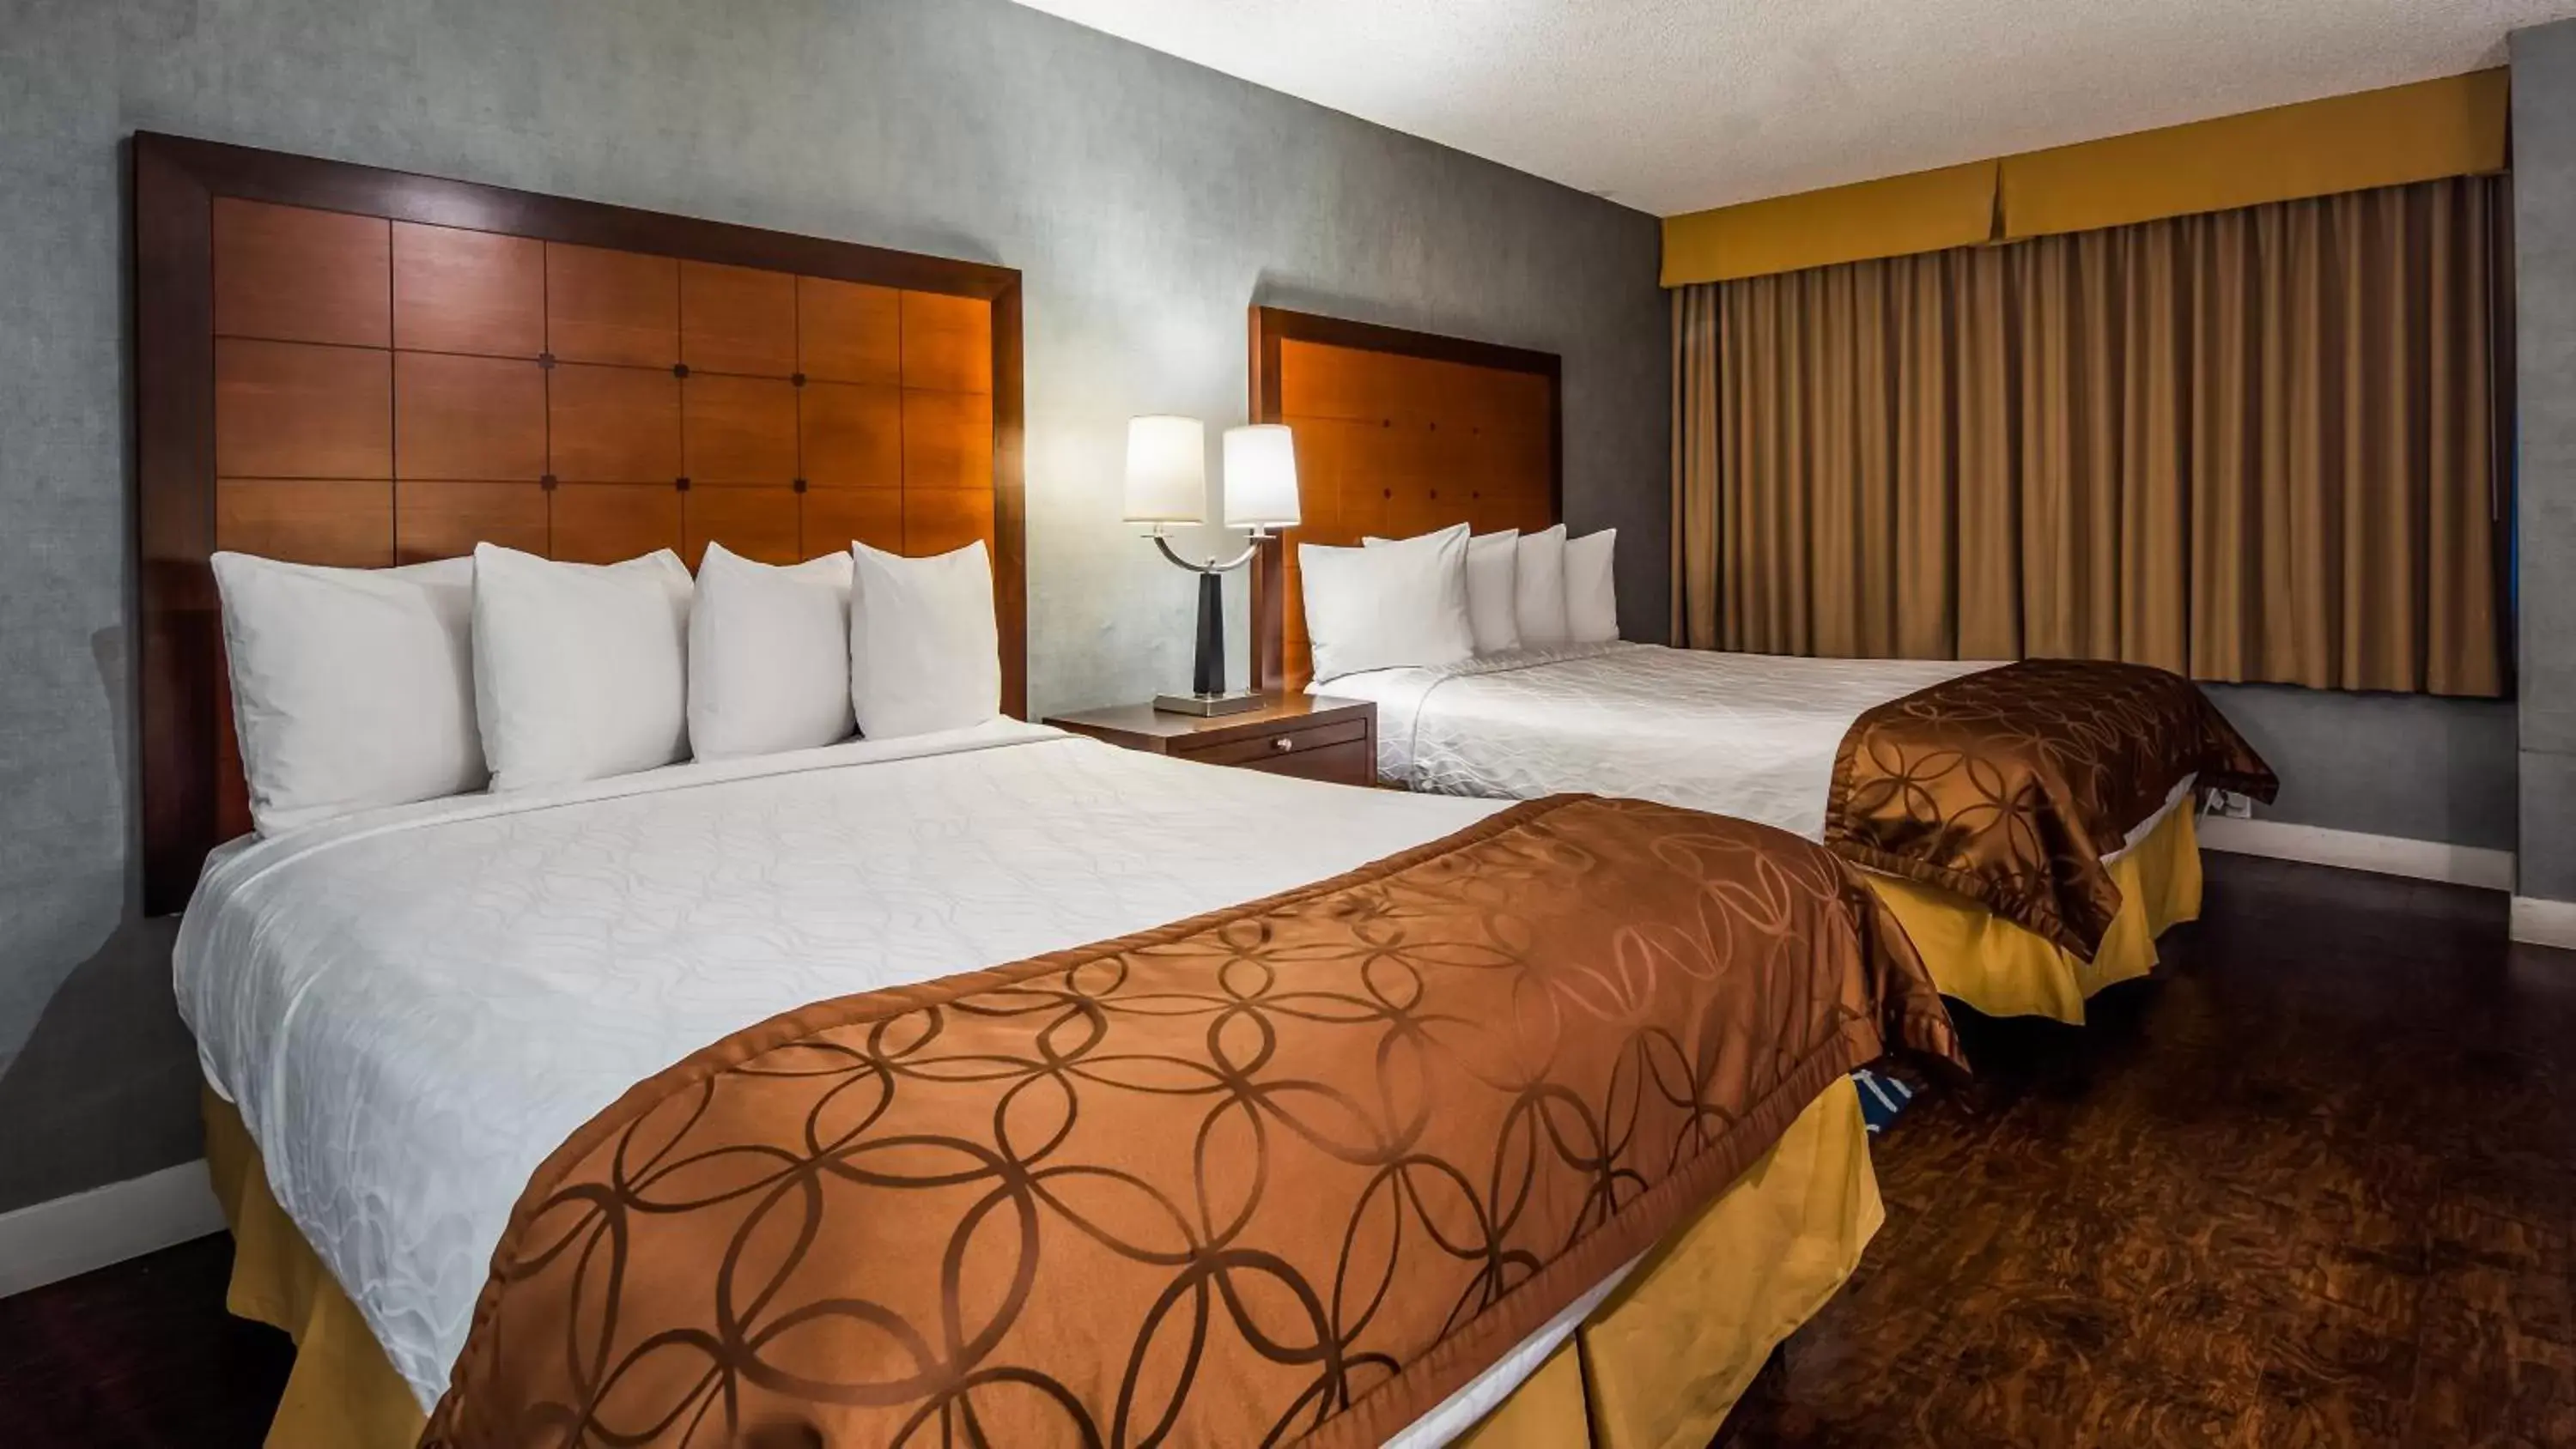 Bedroom, Bed in Best Western Inn at Palm Springs